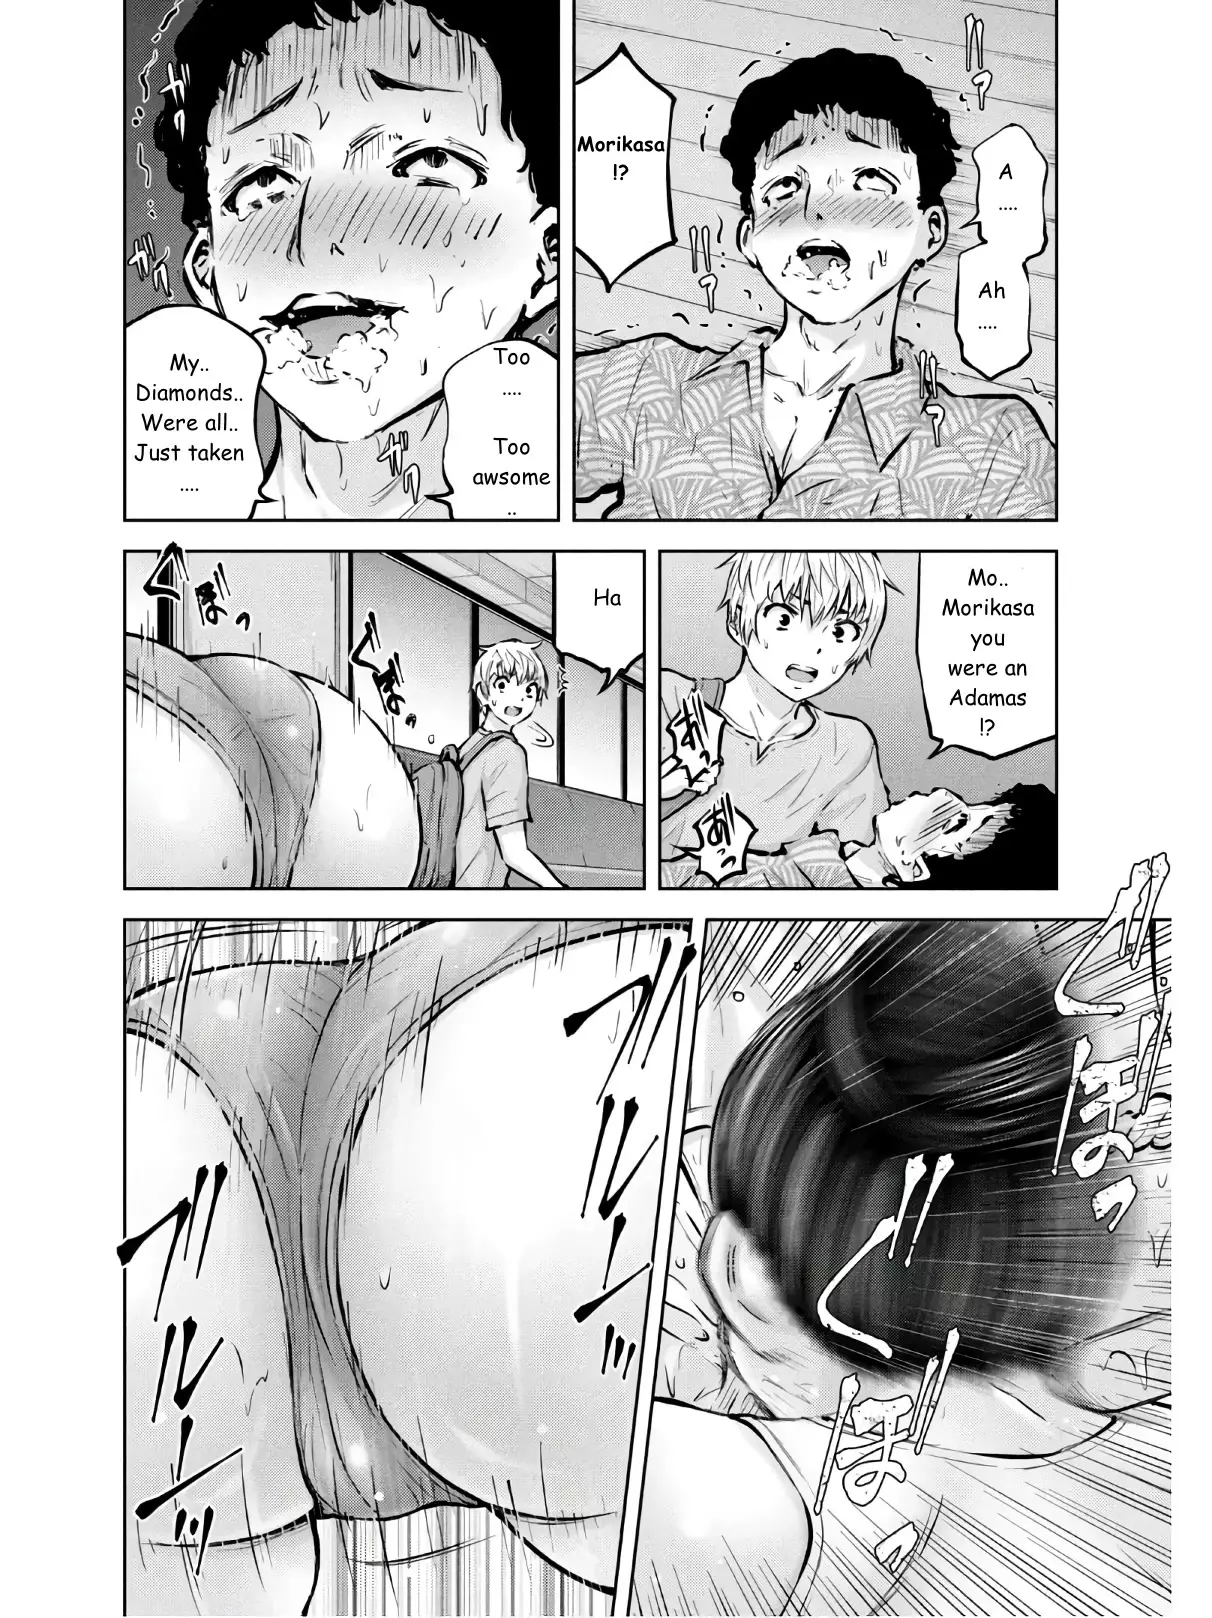 Adamasu No Majotachi - 24 page 12-8491ca3e